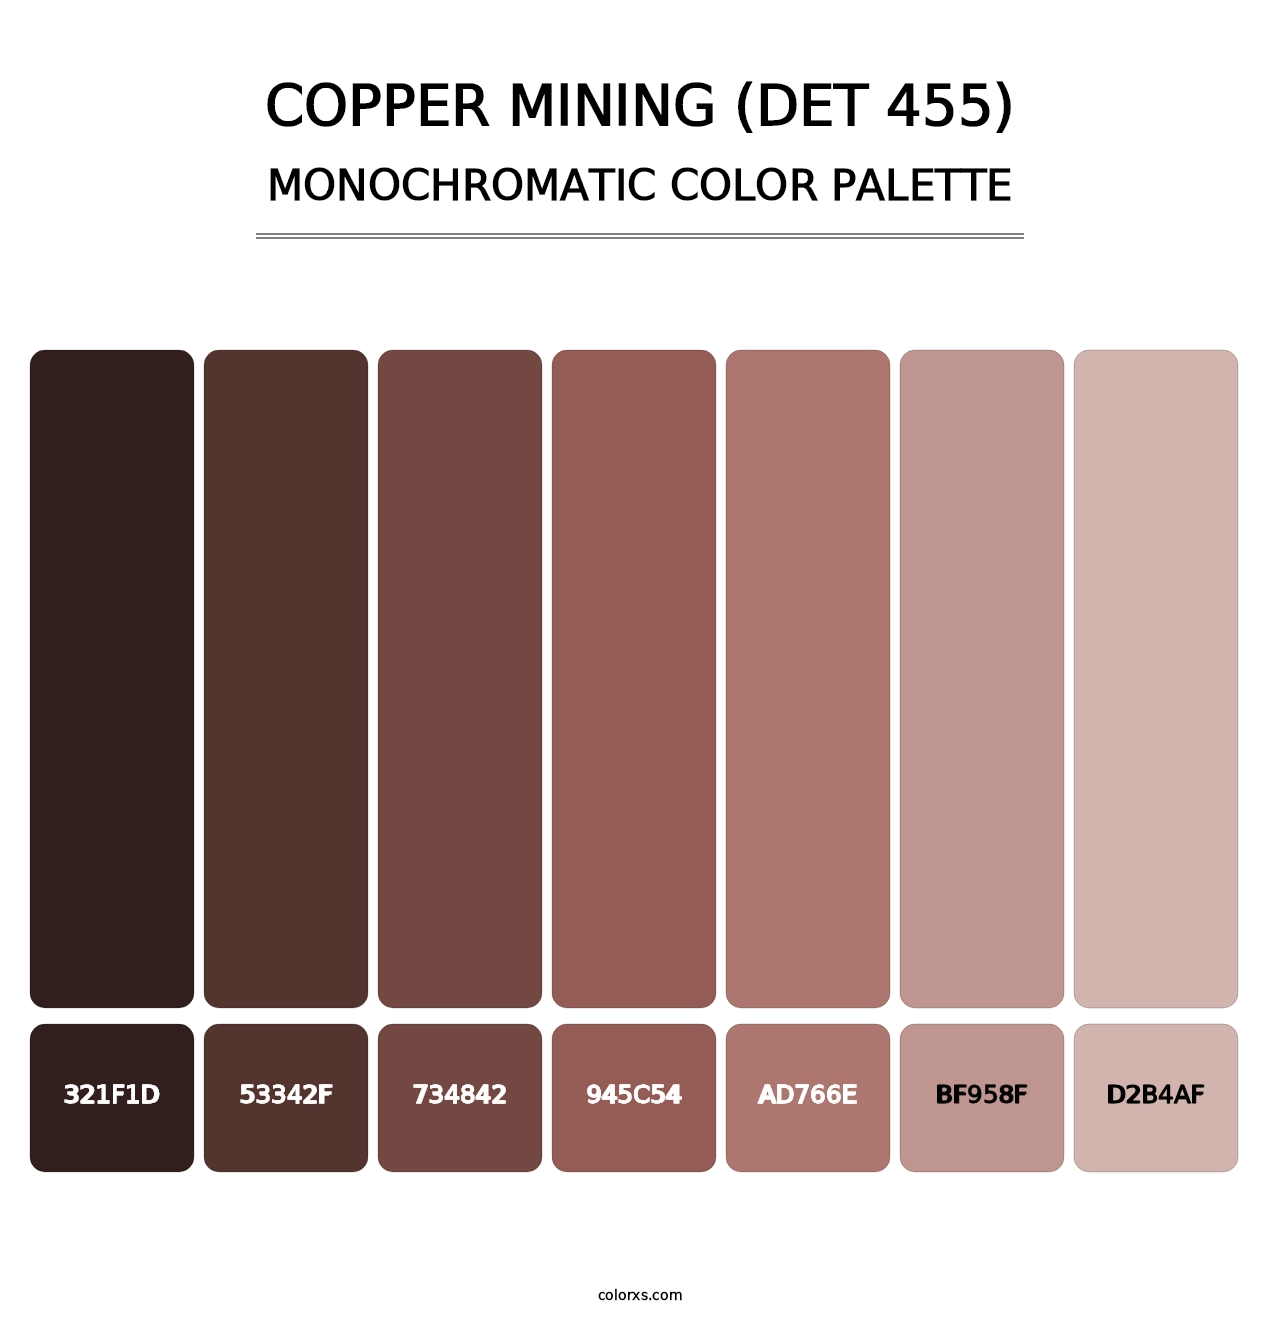 Copper Mining (DET 455) - Monochromatic Color Palette